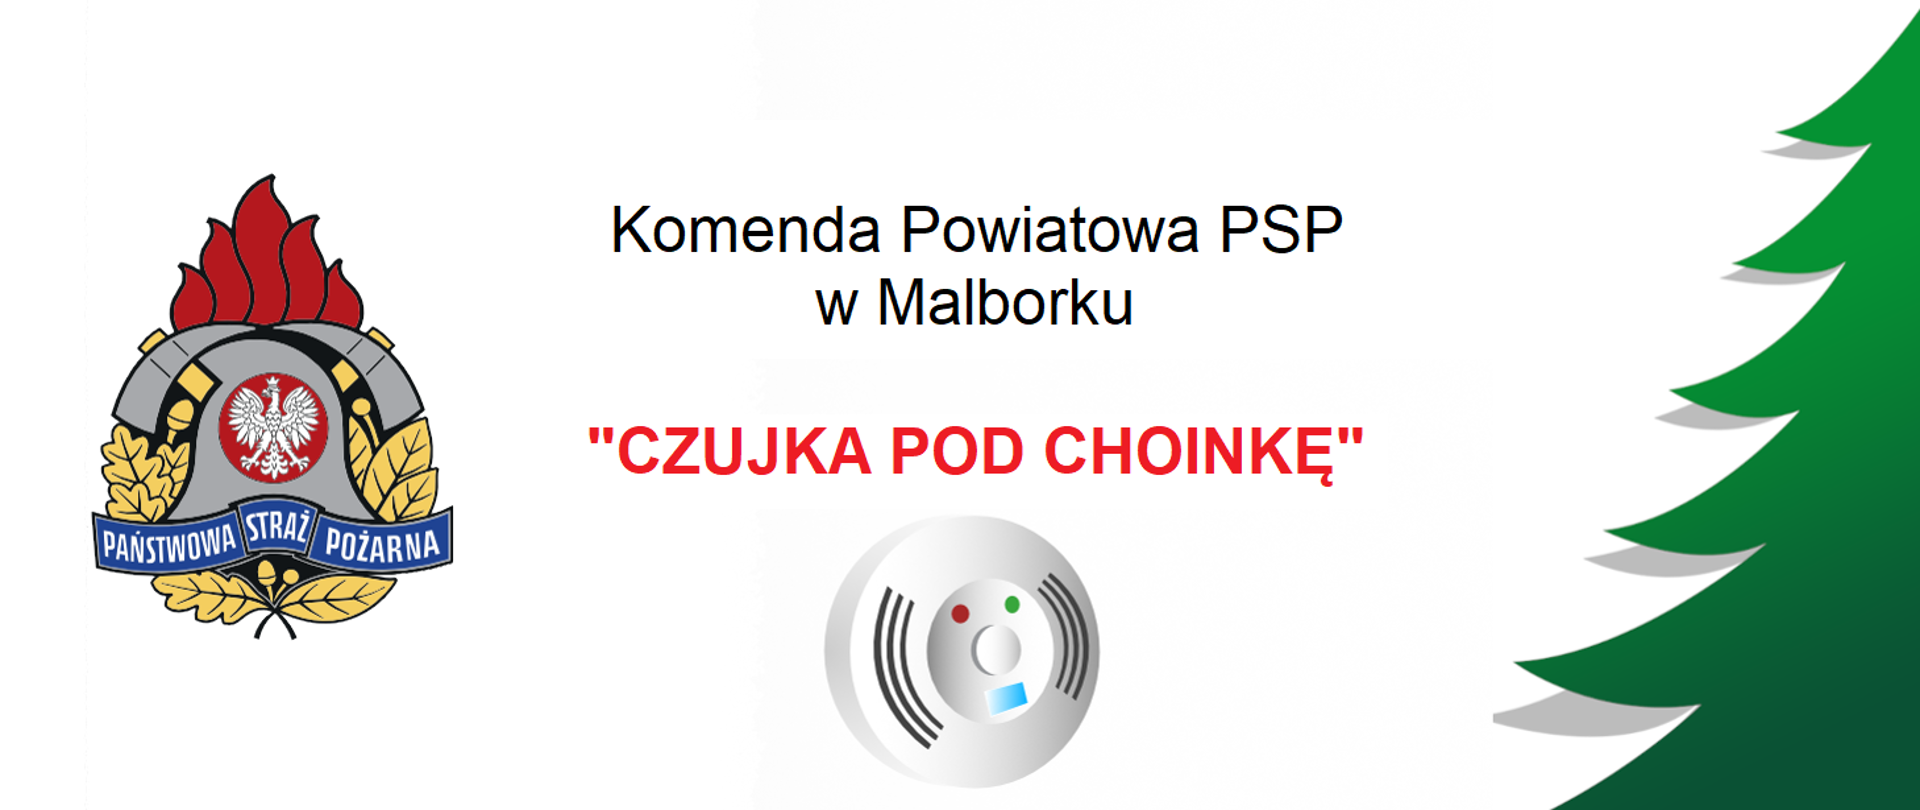 Grafika przedstawia logo PSP, zieloną animowaną choinkę z prawej strony oraz szarą animowaną czujkę dymu, nad którą widnieje napis Komenda Powiatowa PSP w Malborku a pod nim Czujka Pod Choinkę.